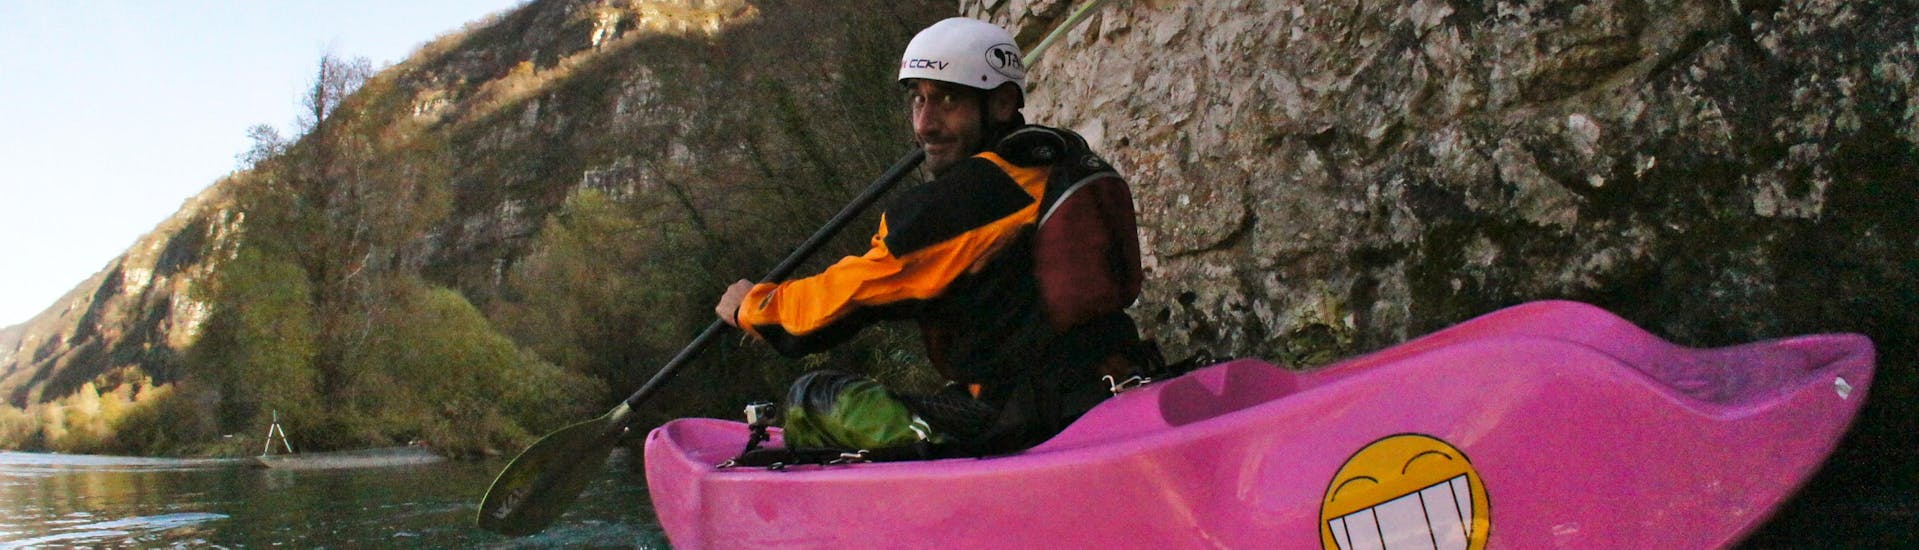 Kayak y piragua fácil en Castione Andevenno - Adda.